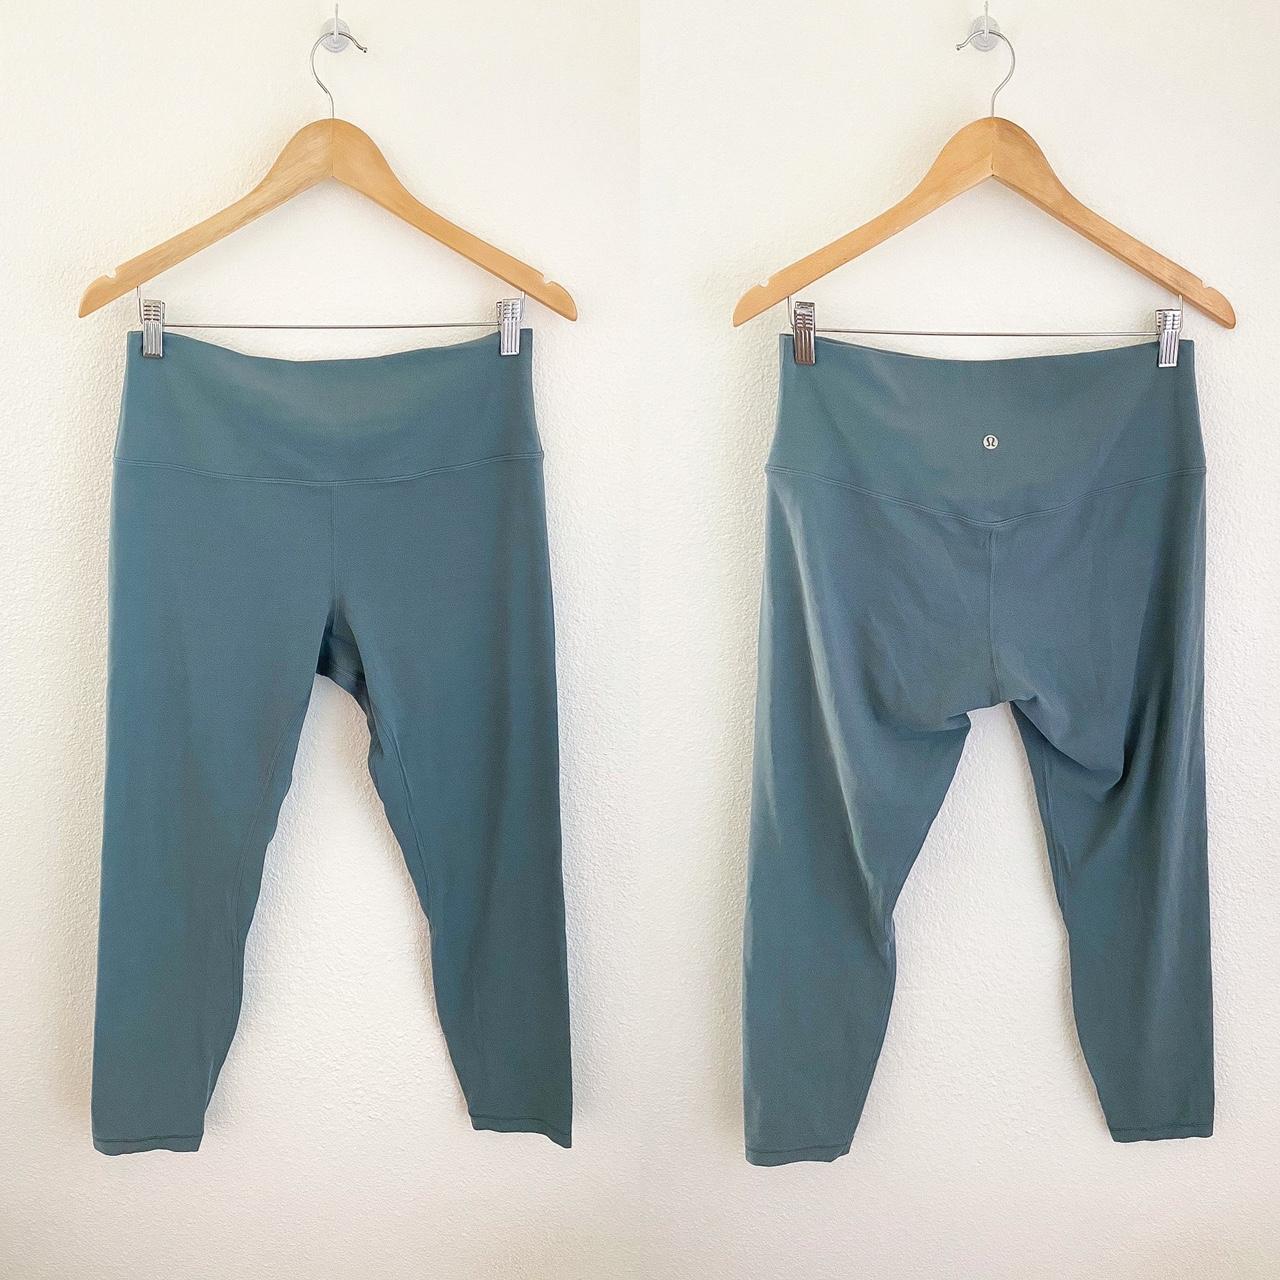 Lululemon Align leggings 25” in Waterdrop color